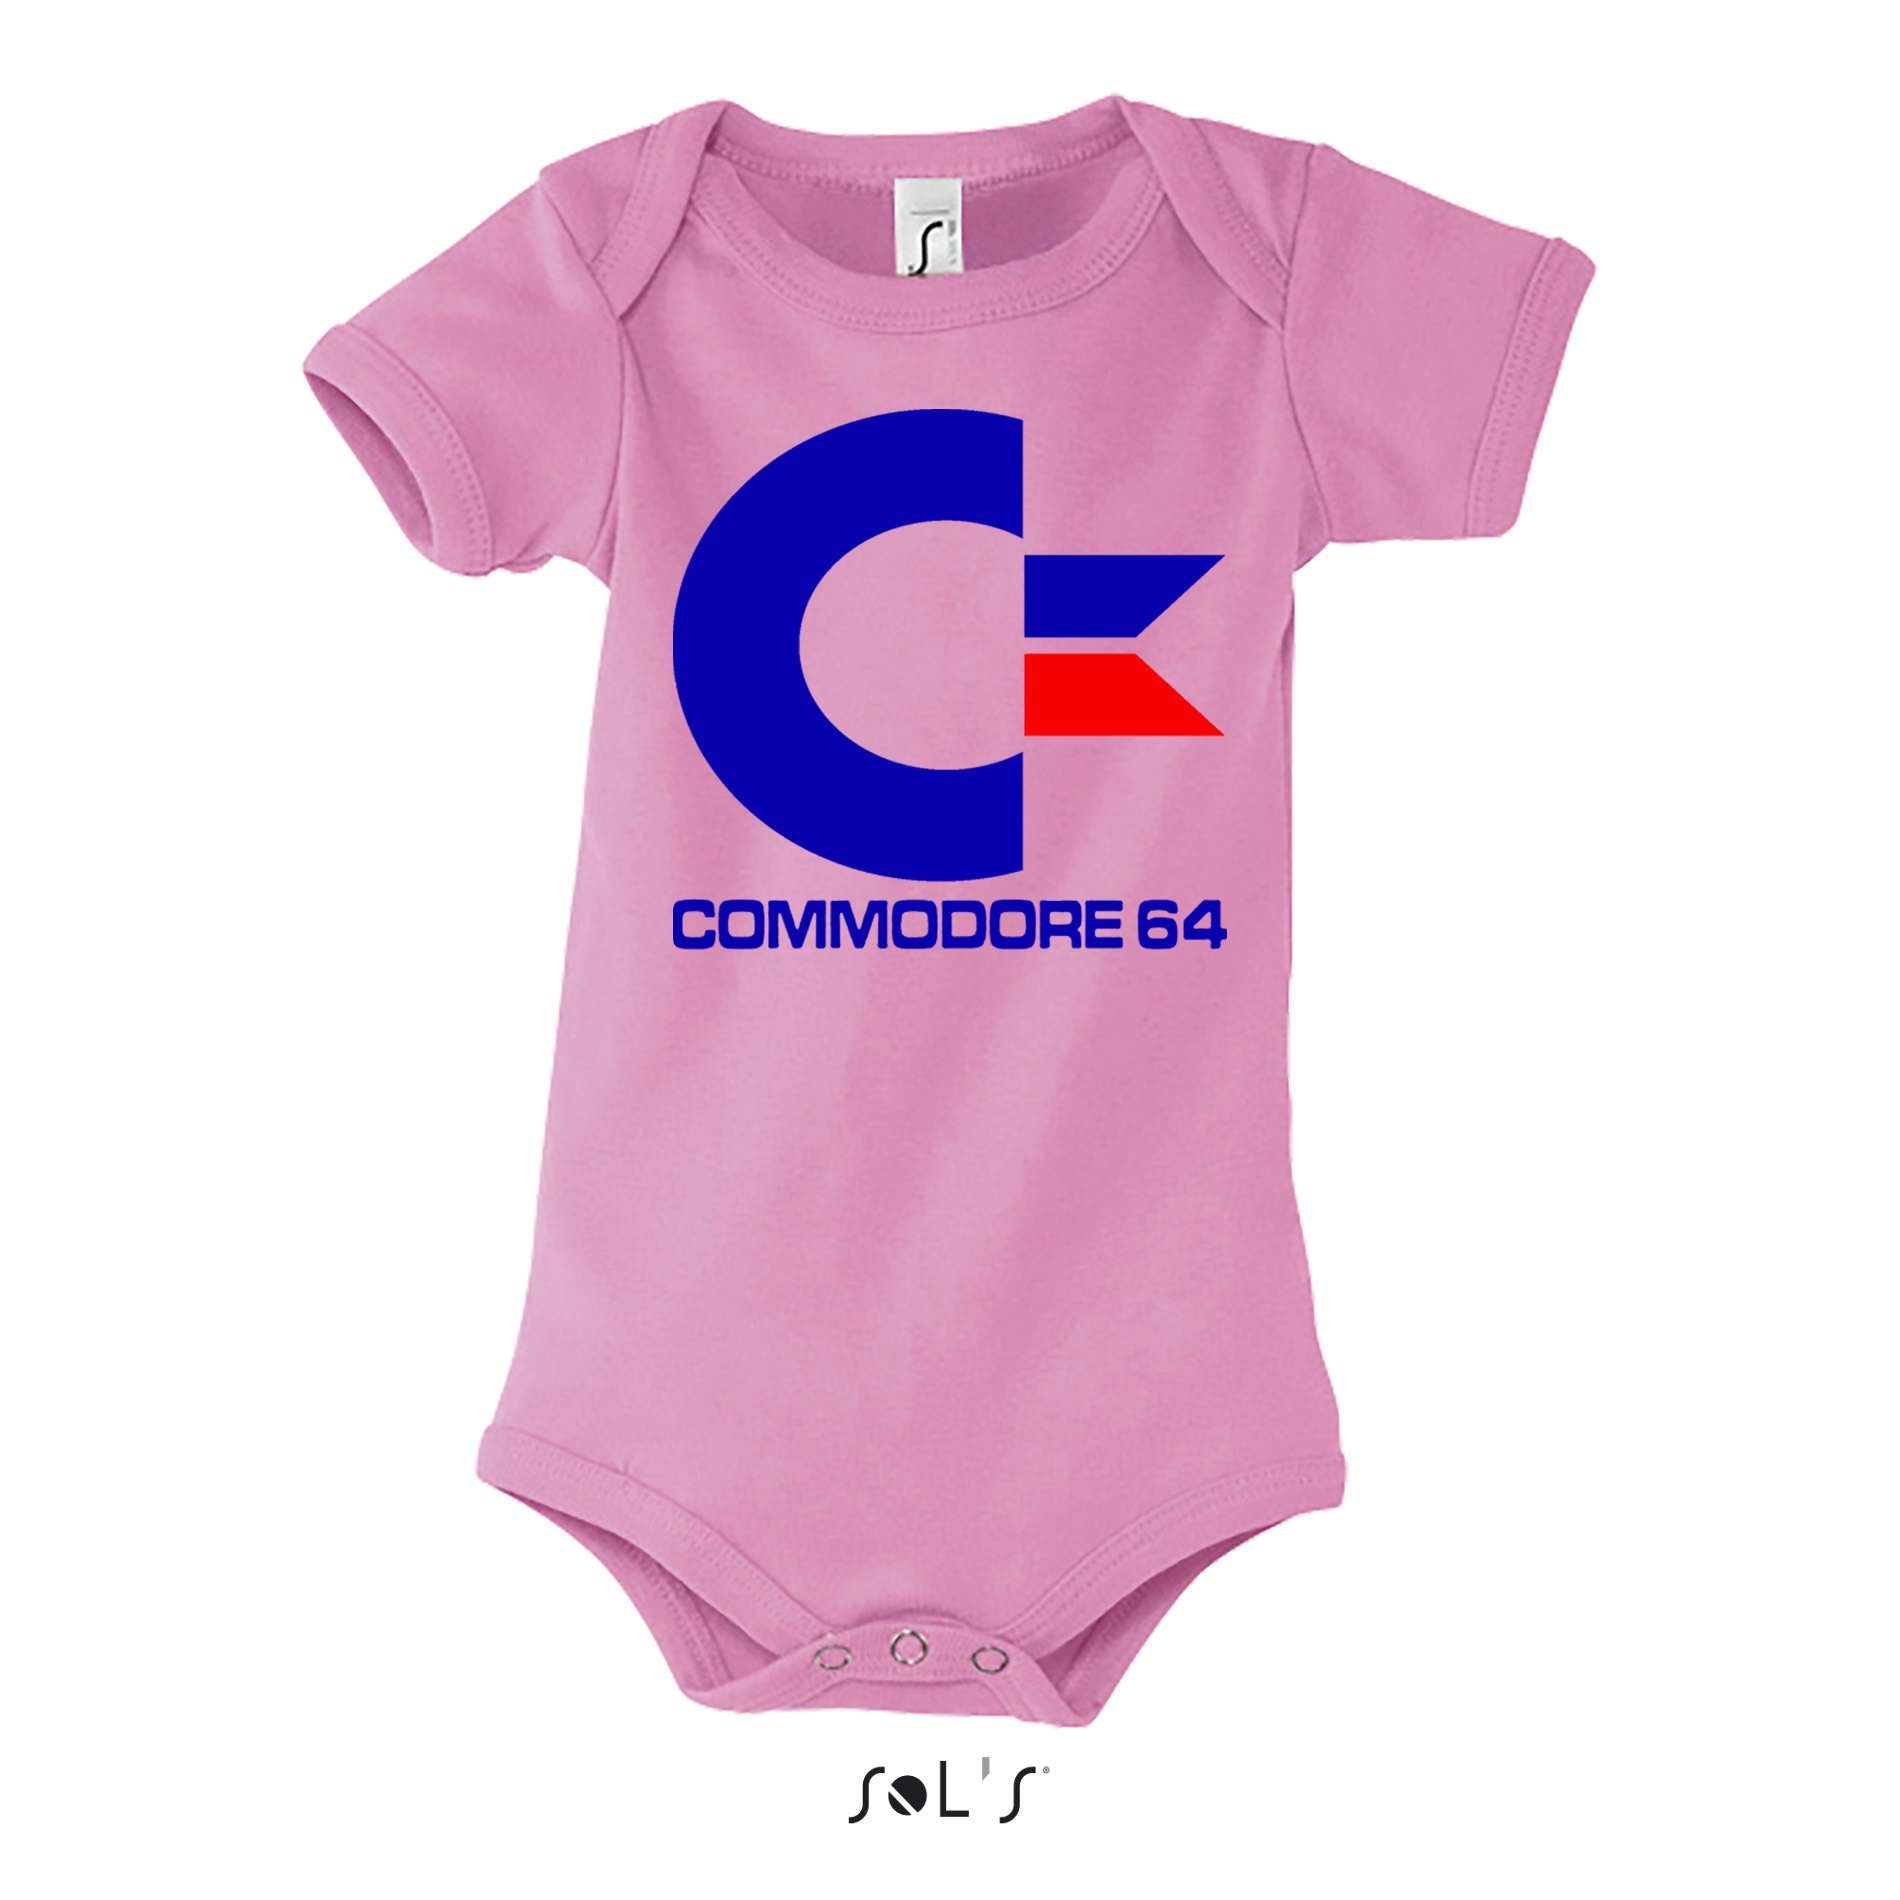 & Baby Commodore Brownie Kinder Rosa Konsole 64 Strampler Nintendo Amige Blondie